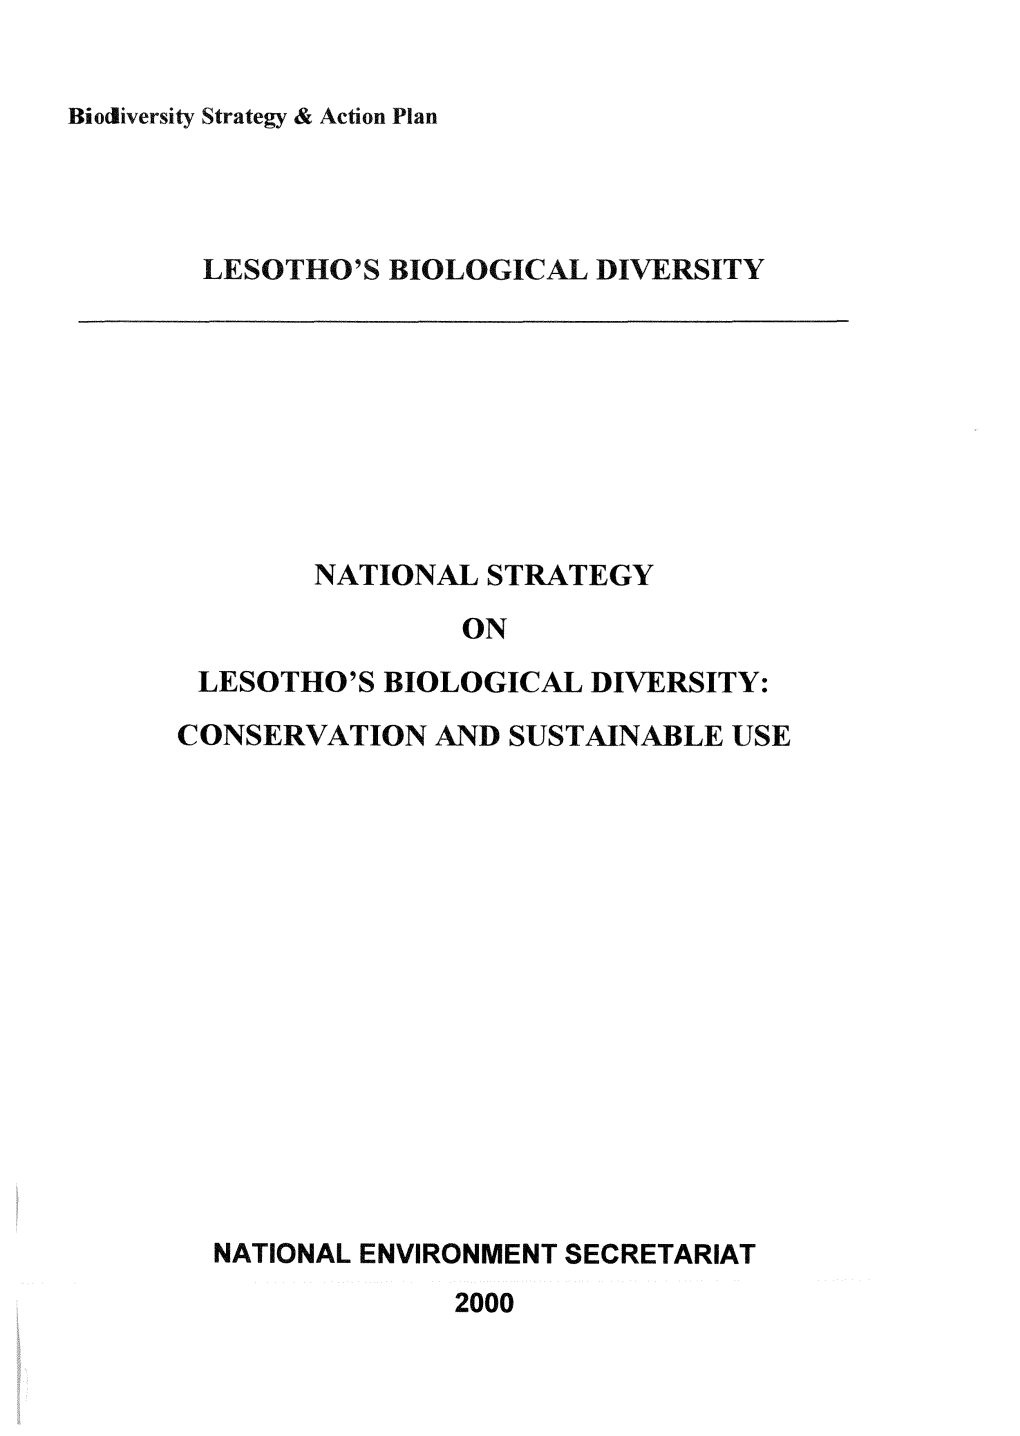 Lesotho's Biological Diversity